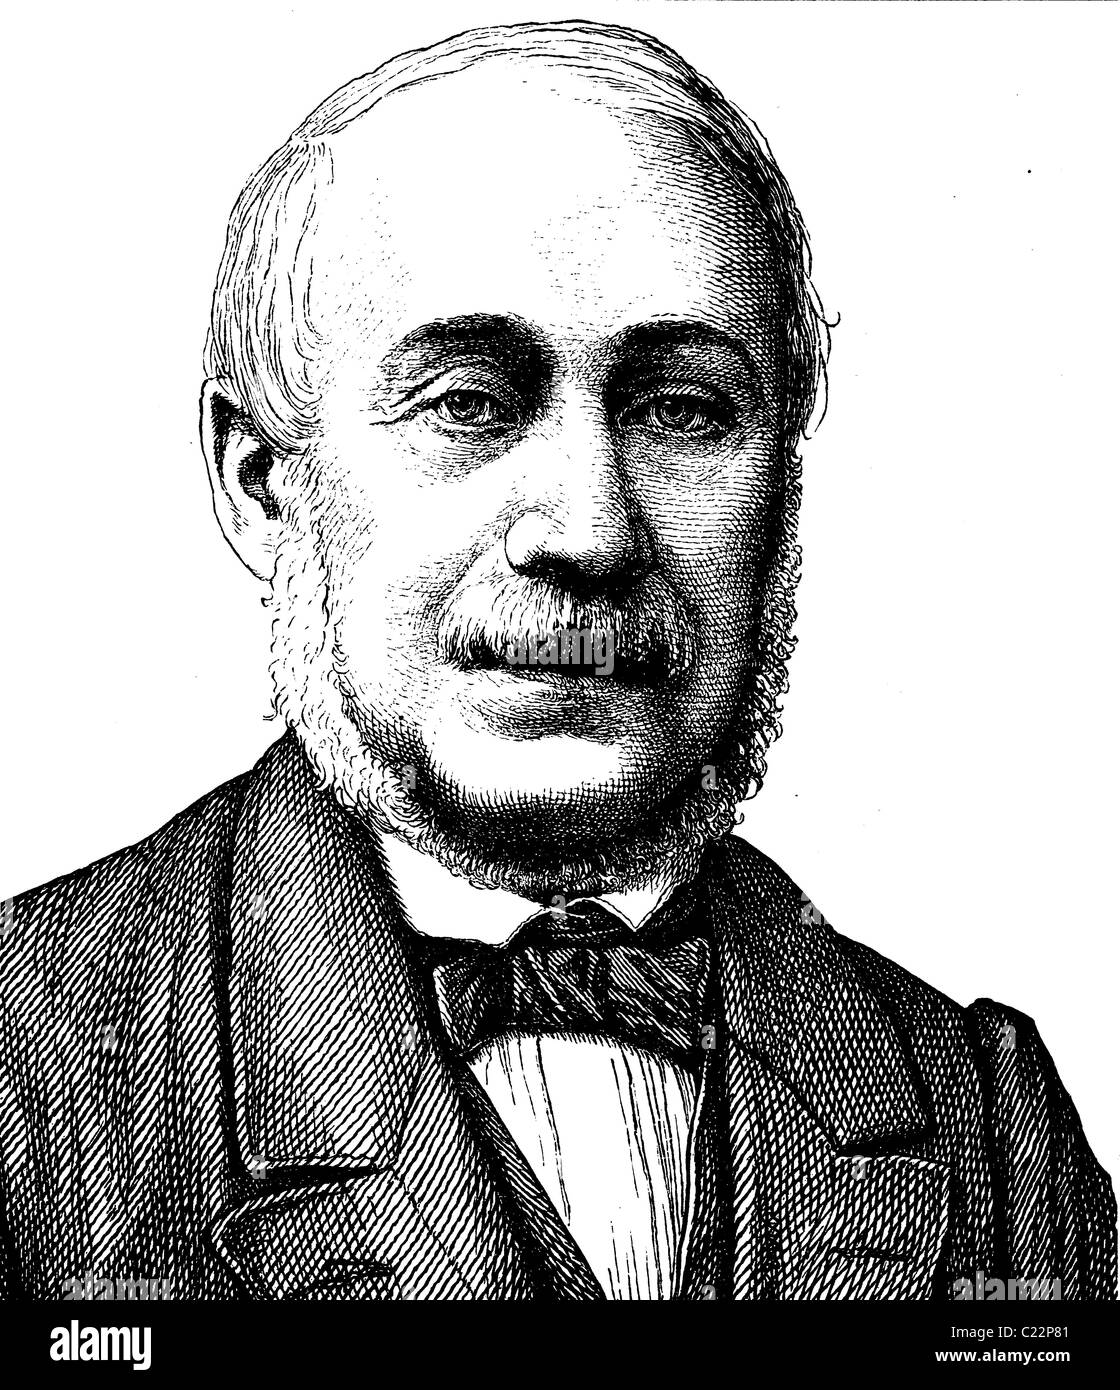 L'amélioration de l'image numérique de Karl Mathy, 1806 - 1868, journaliste et politicien, portrait, illustration historique, 1880 Banque D'Images